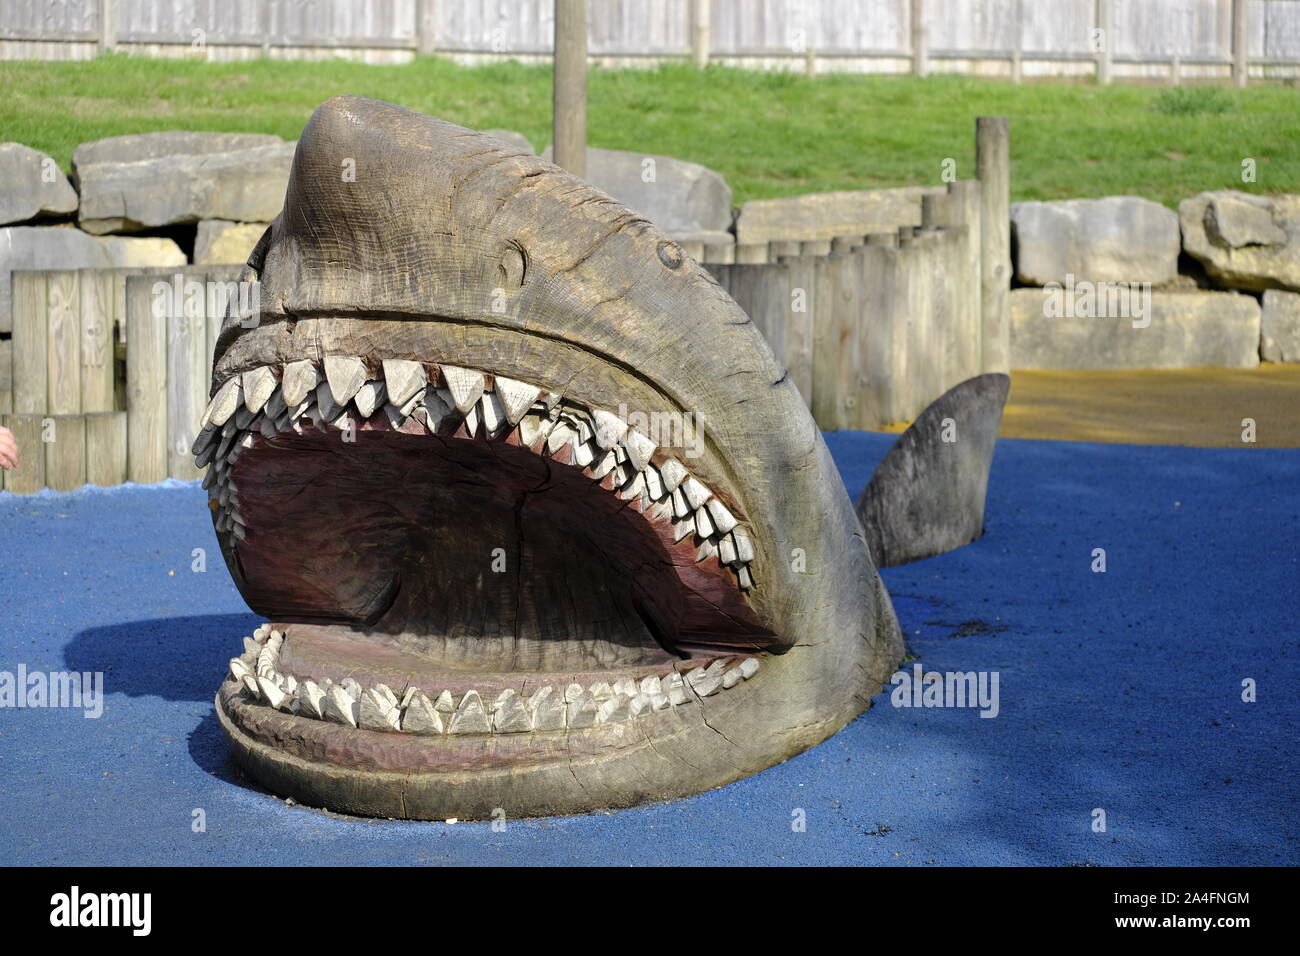 Marwell Zoo, Hampshire, Inglaterra, Reino Unido. Madera grandes esculturas de tiburones en la zona de juegos infantiles en Marwell Zoo Foto de stock